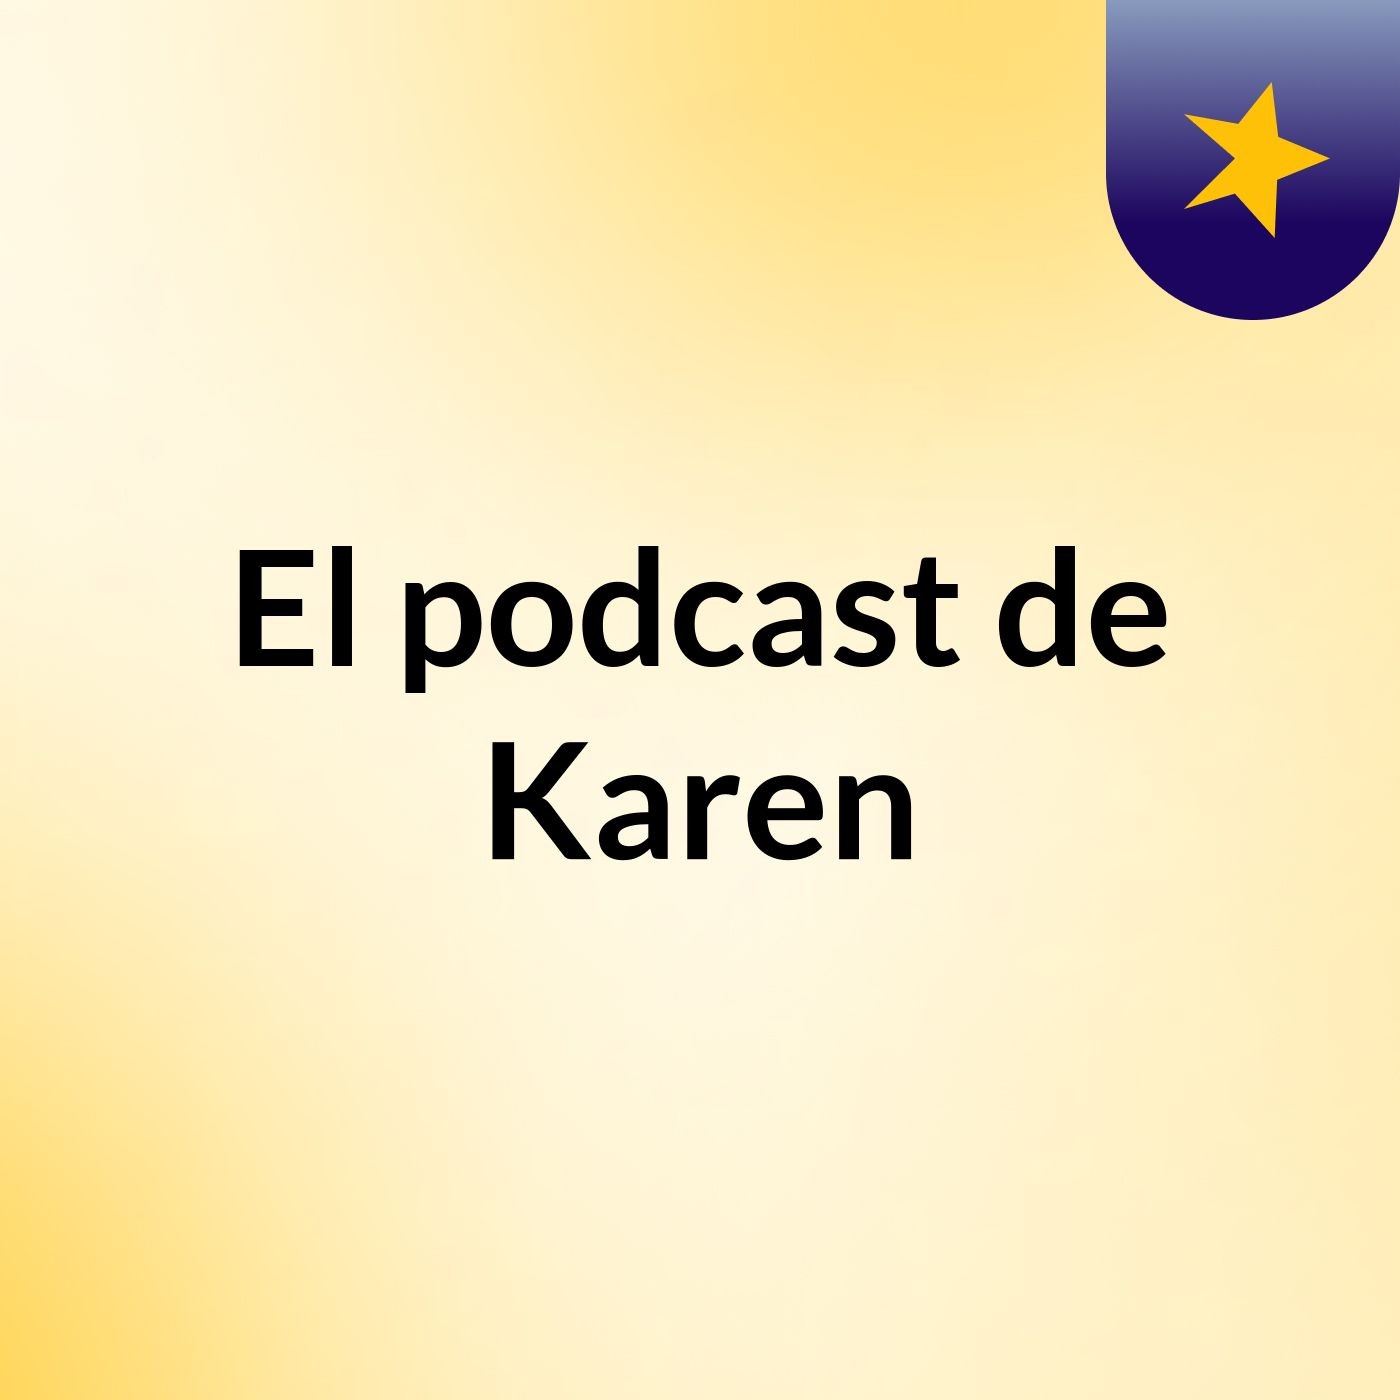 El podcast de Karen